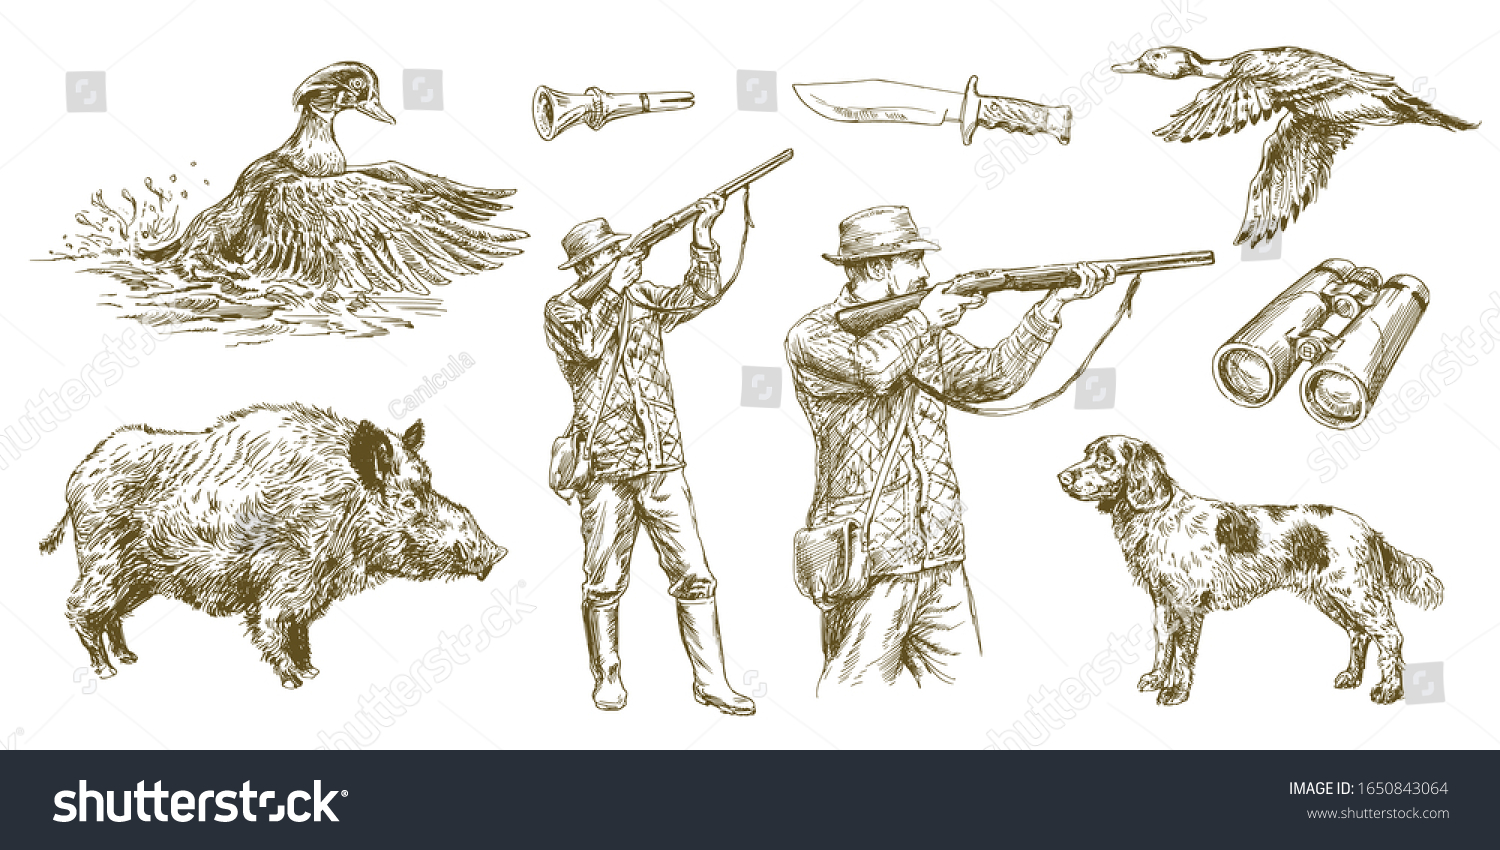 Рисунок стреляющий из ружья в животных